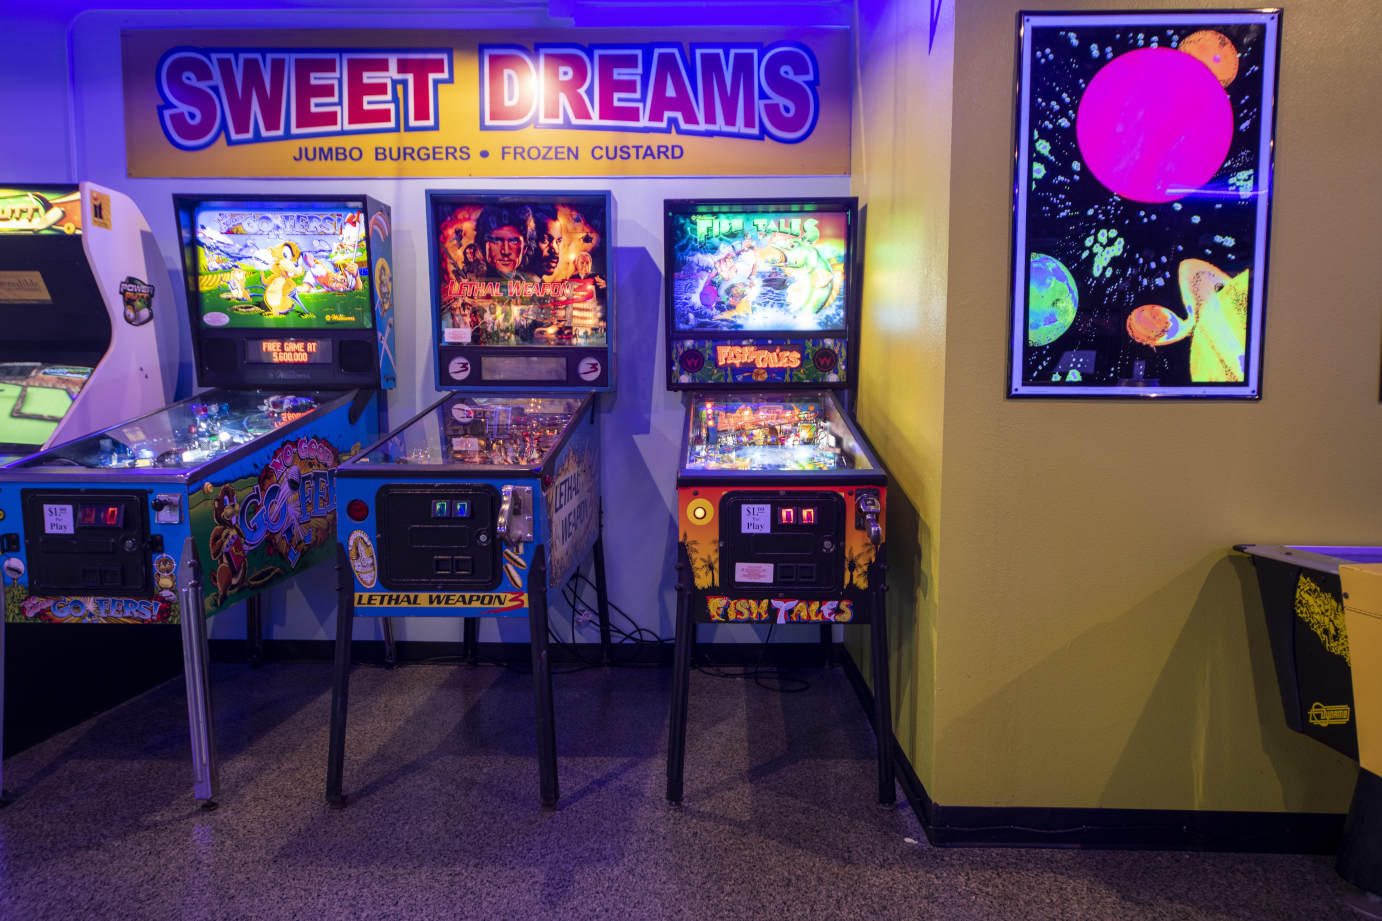 Interior, gaming area, pinball machines